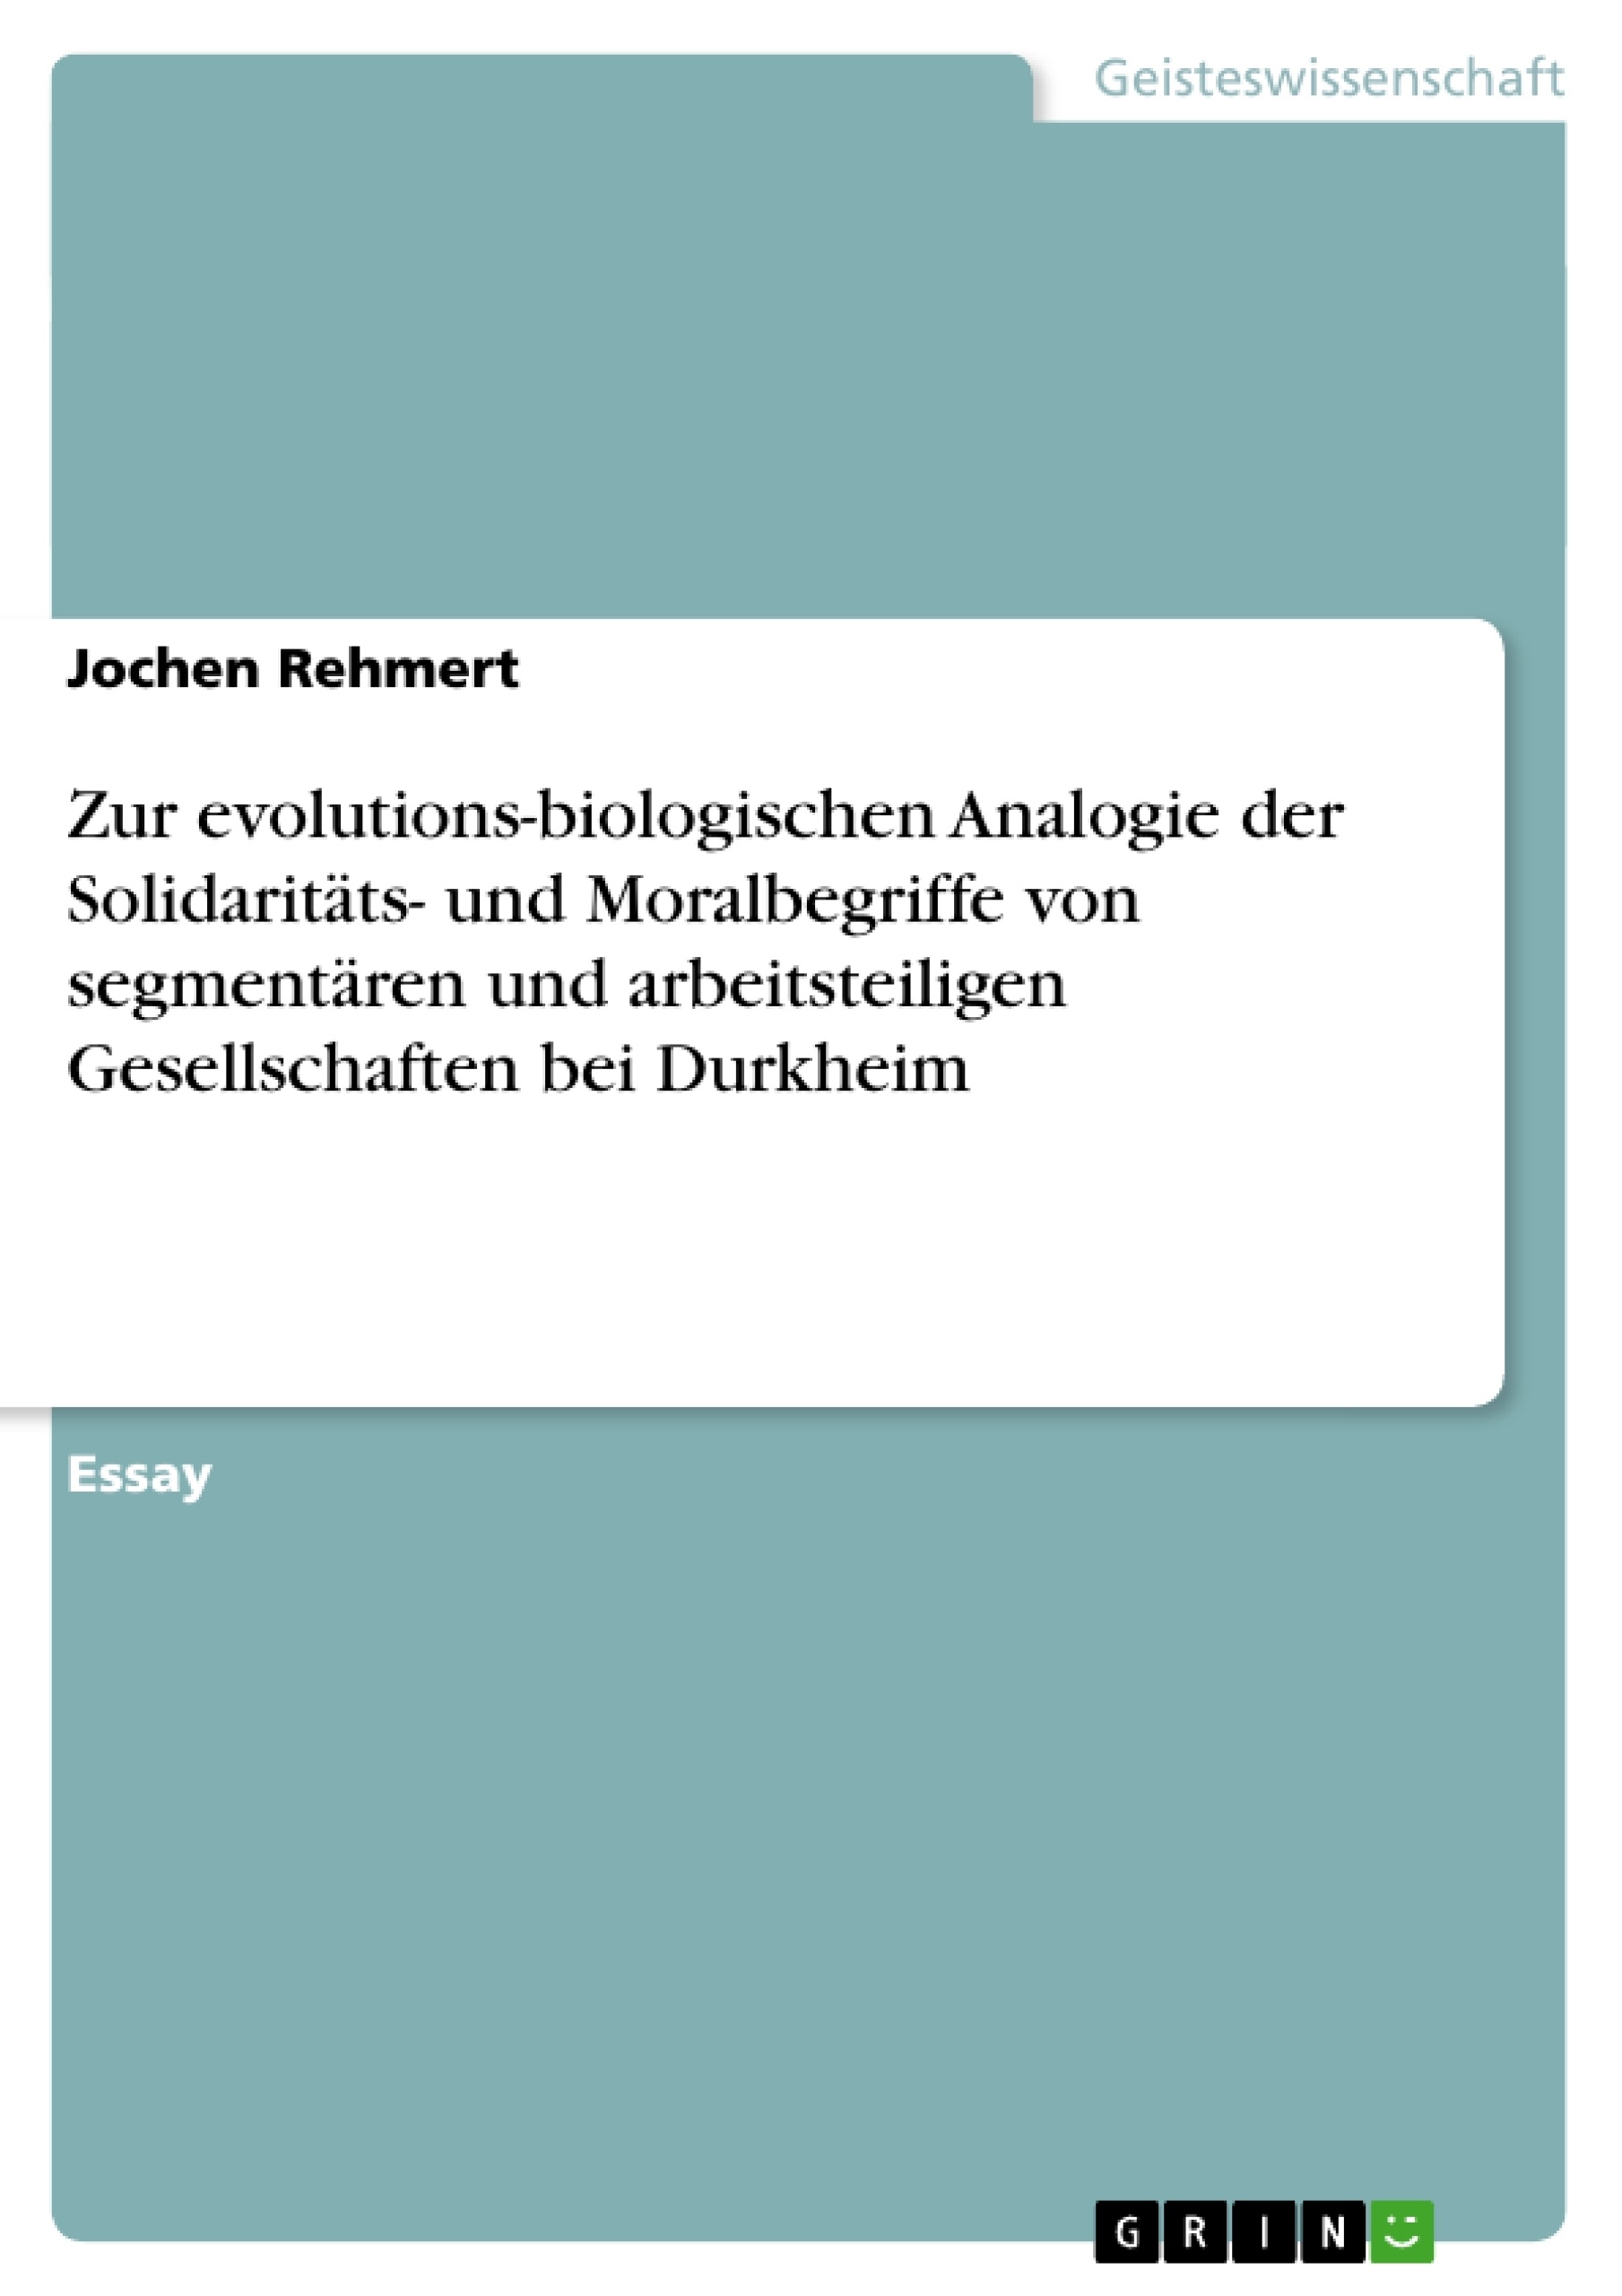 Title: Zur evolutions-biologischen Analogie der Solidaritäts- und Moralbegriffe von segmentären und arbeitsteiligen Gesellschaften bei Durkheim